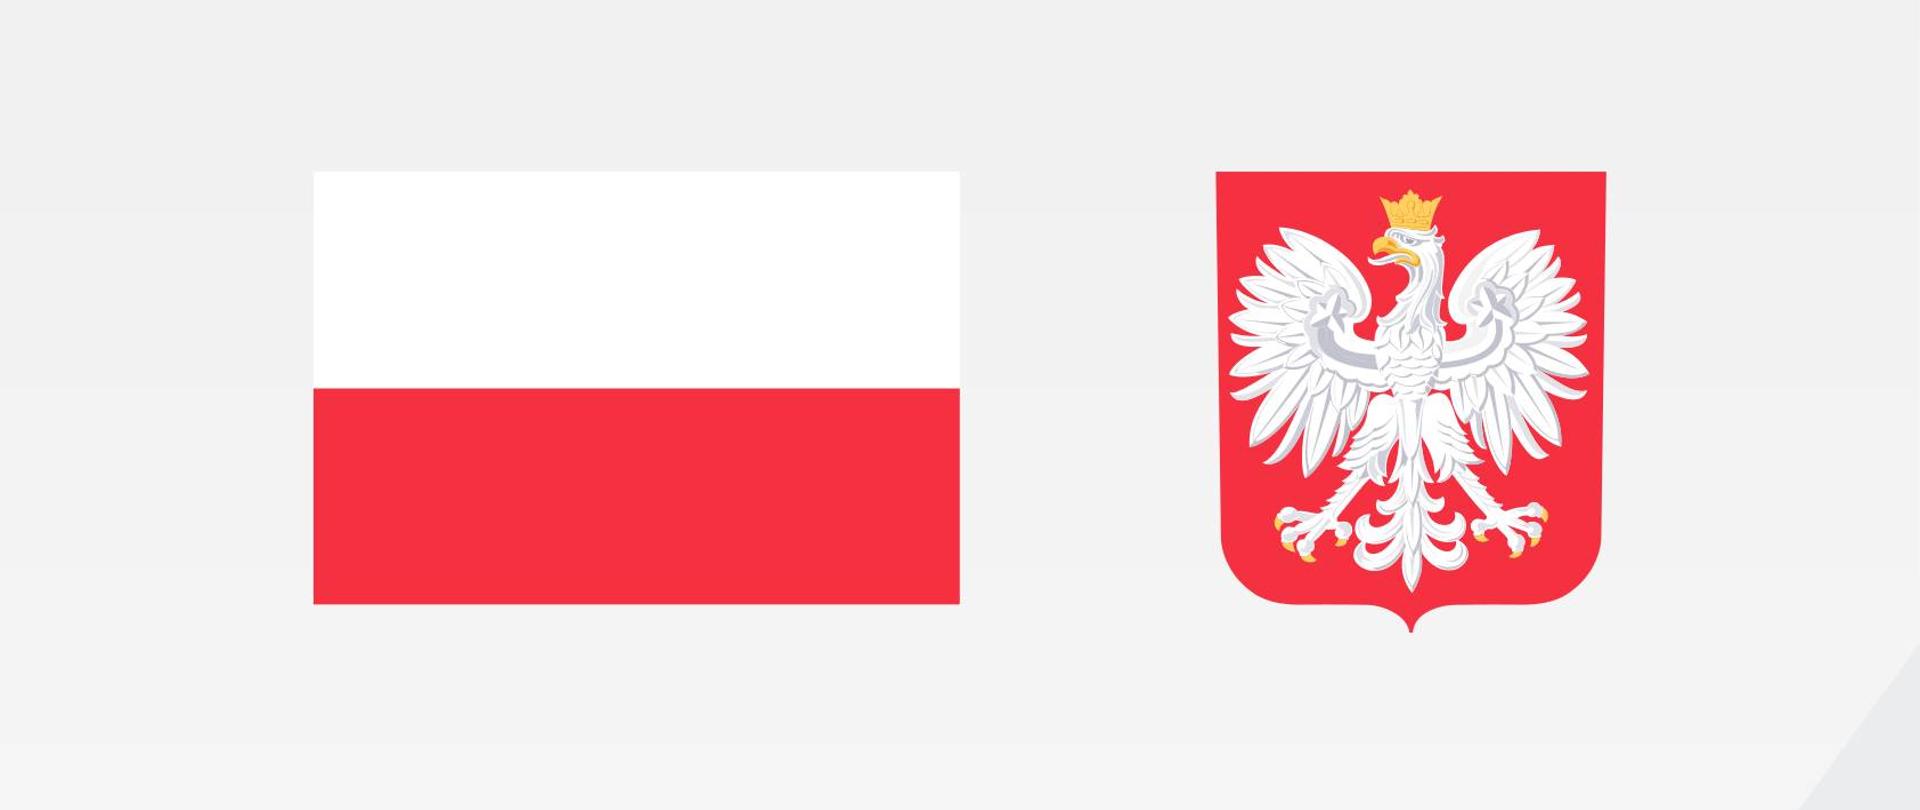 Plakat projektu: flaga i godło Polski, nazwa i wartość projektu